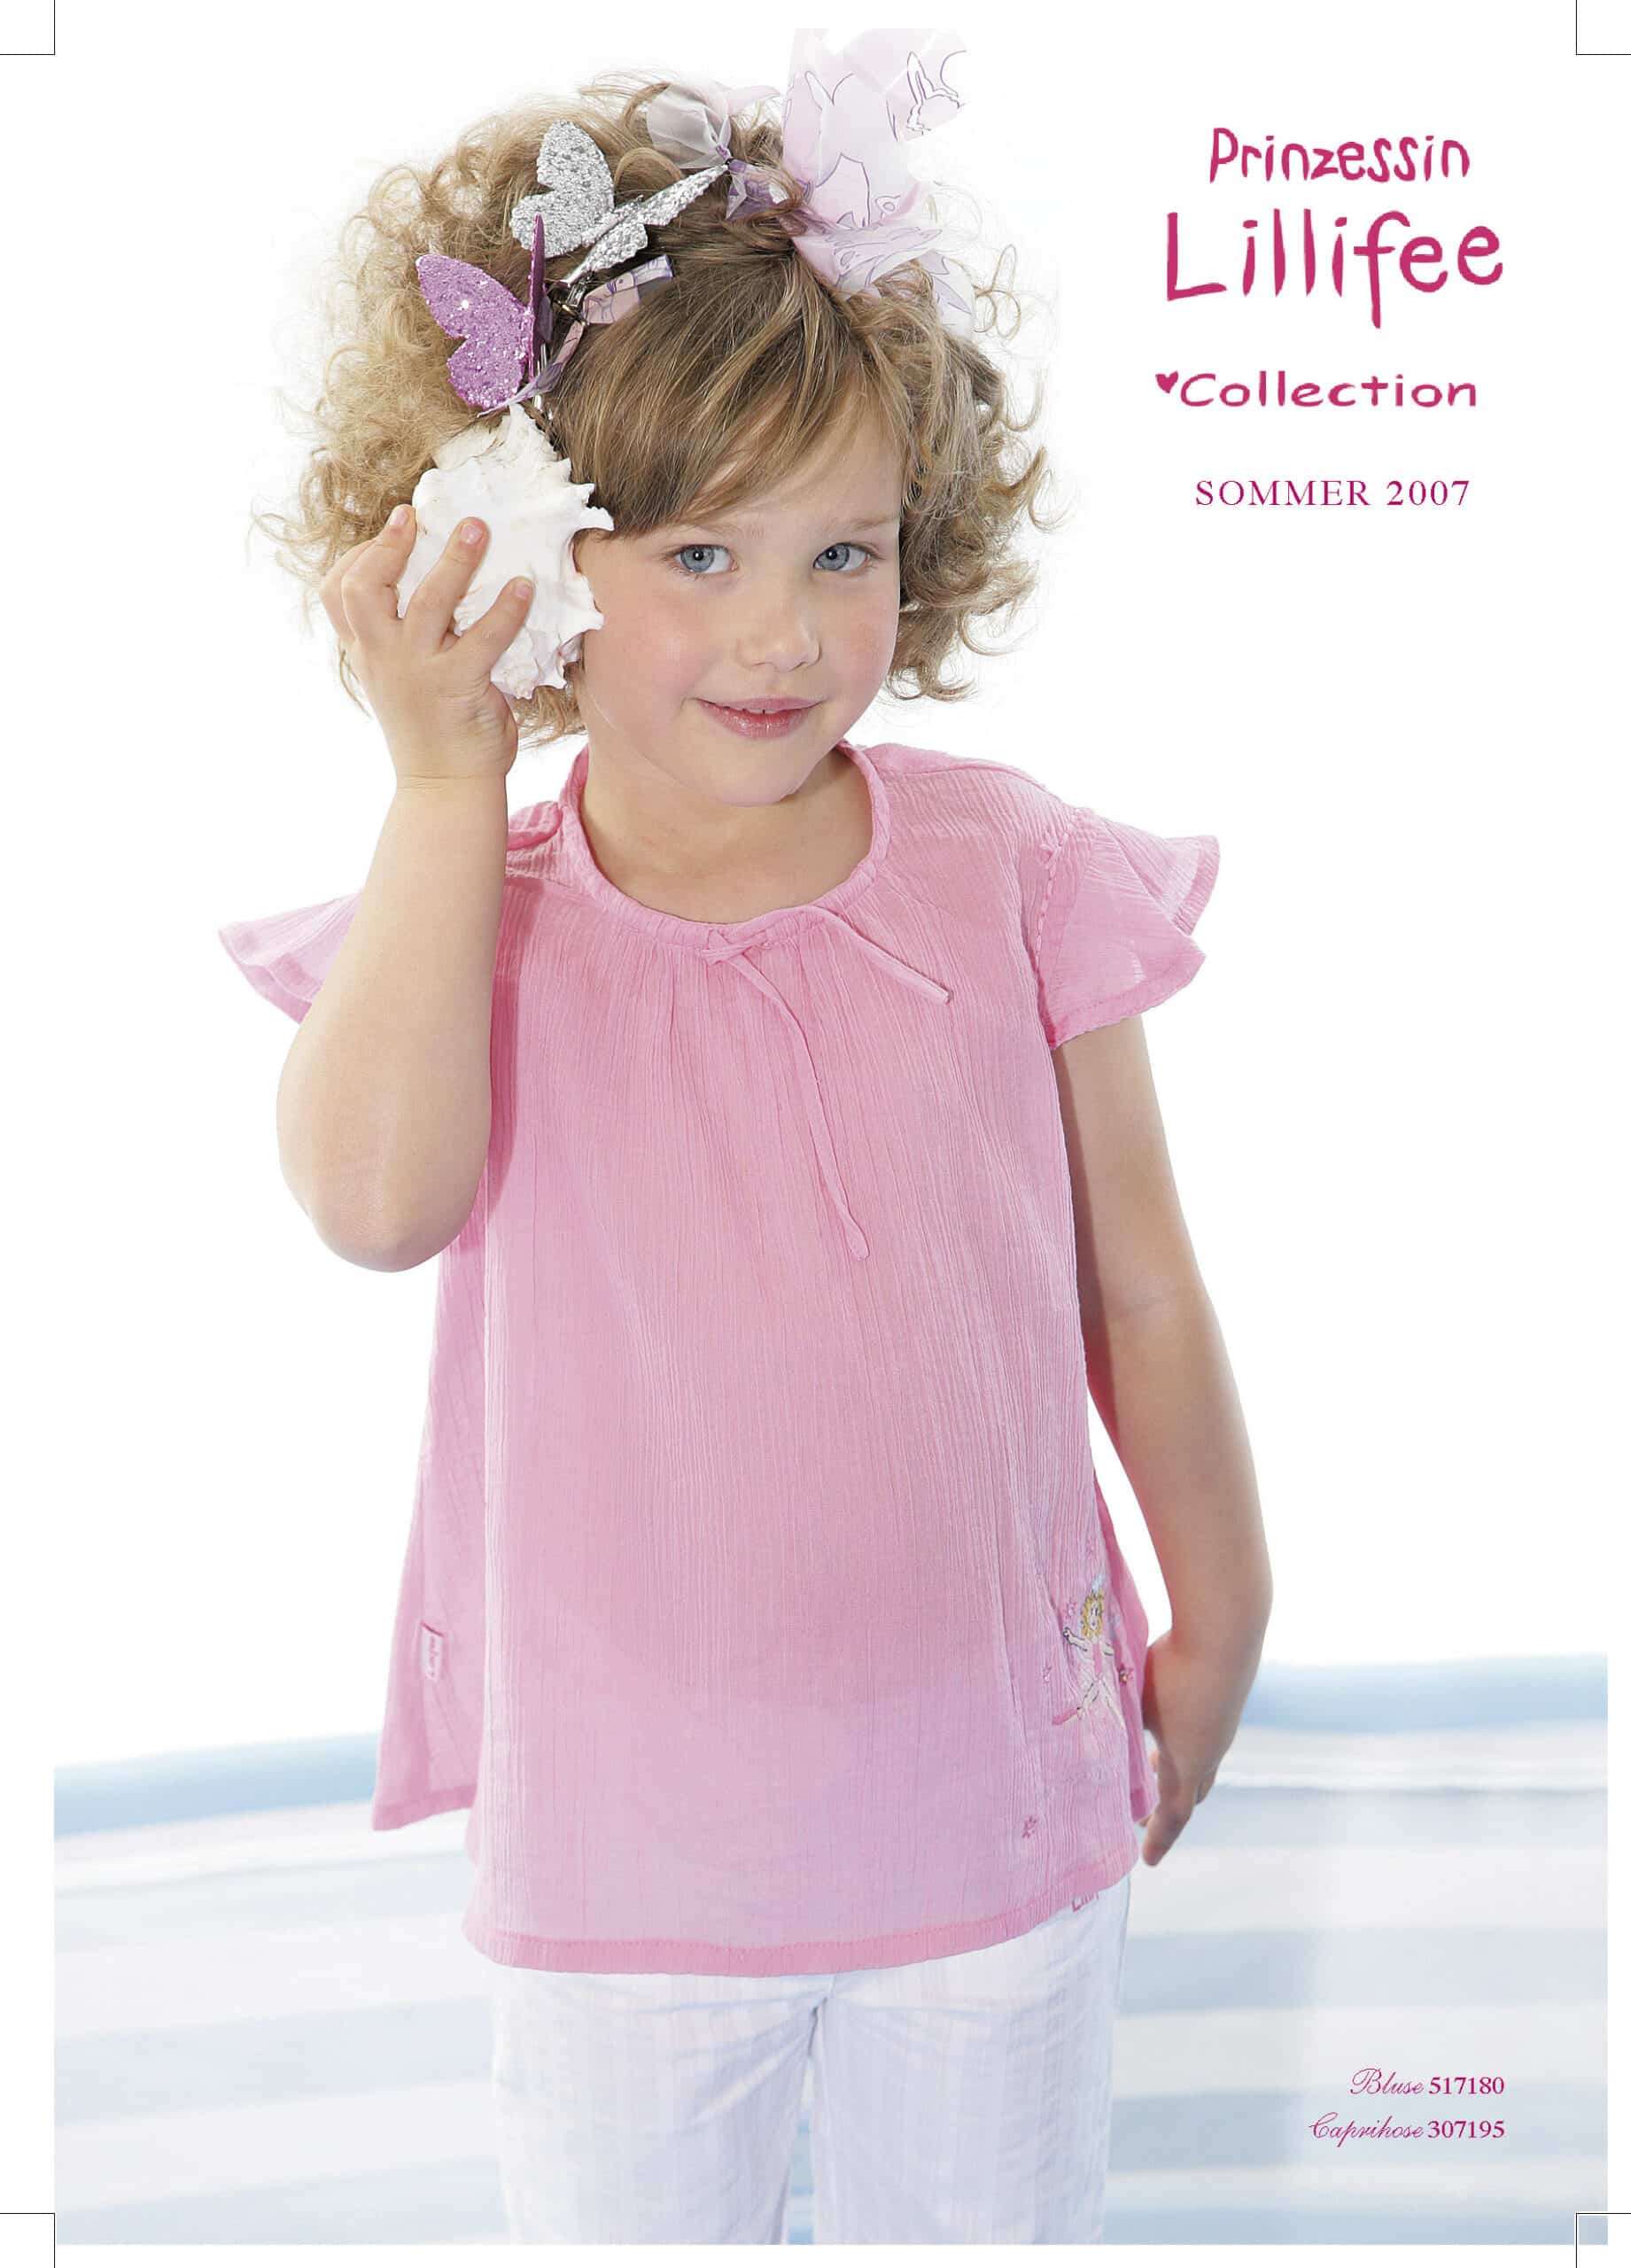 Ein junges Mädchen mit lockigem Haar, einem rosa T-Shirt und einer Muschel in der Hand steht lächelnd vor einem weißen Hintergrund. Sie hat Schmetterlingsspangen im Haar. Der Text lautet „Prinzessin Lillifee Kollektion Sommer 2007“. © Fotografie Tomas Rodriguez